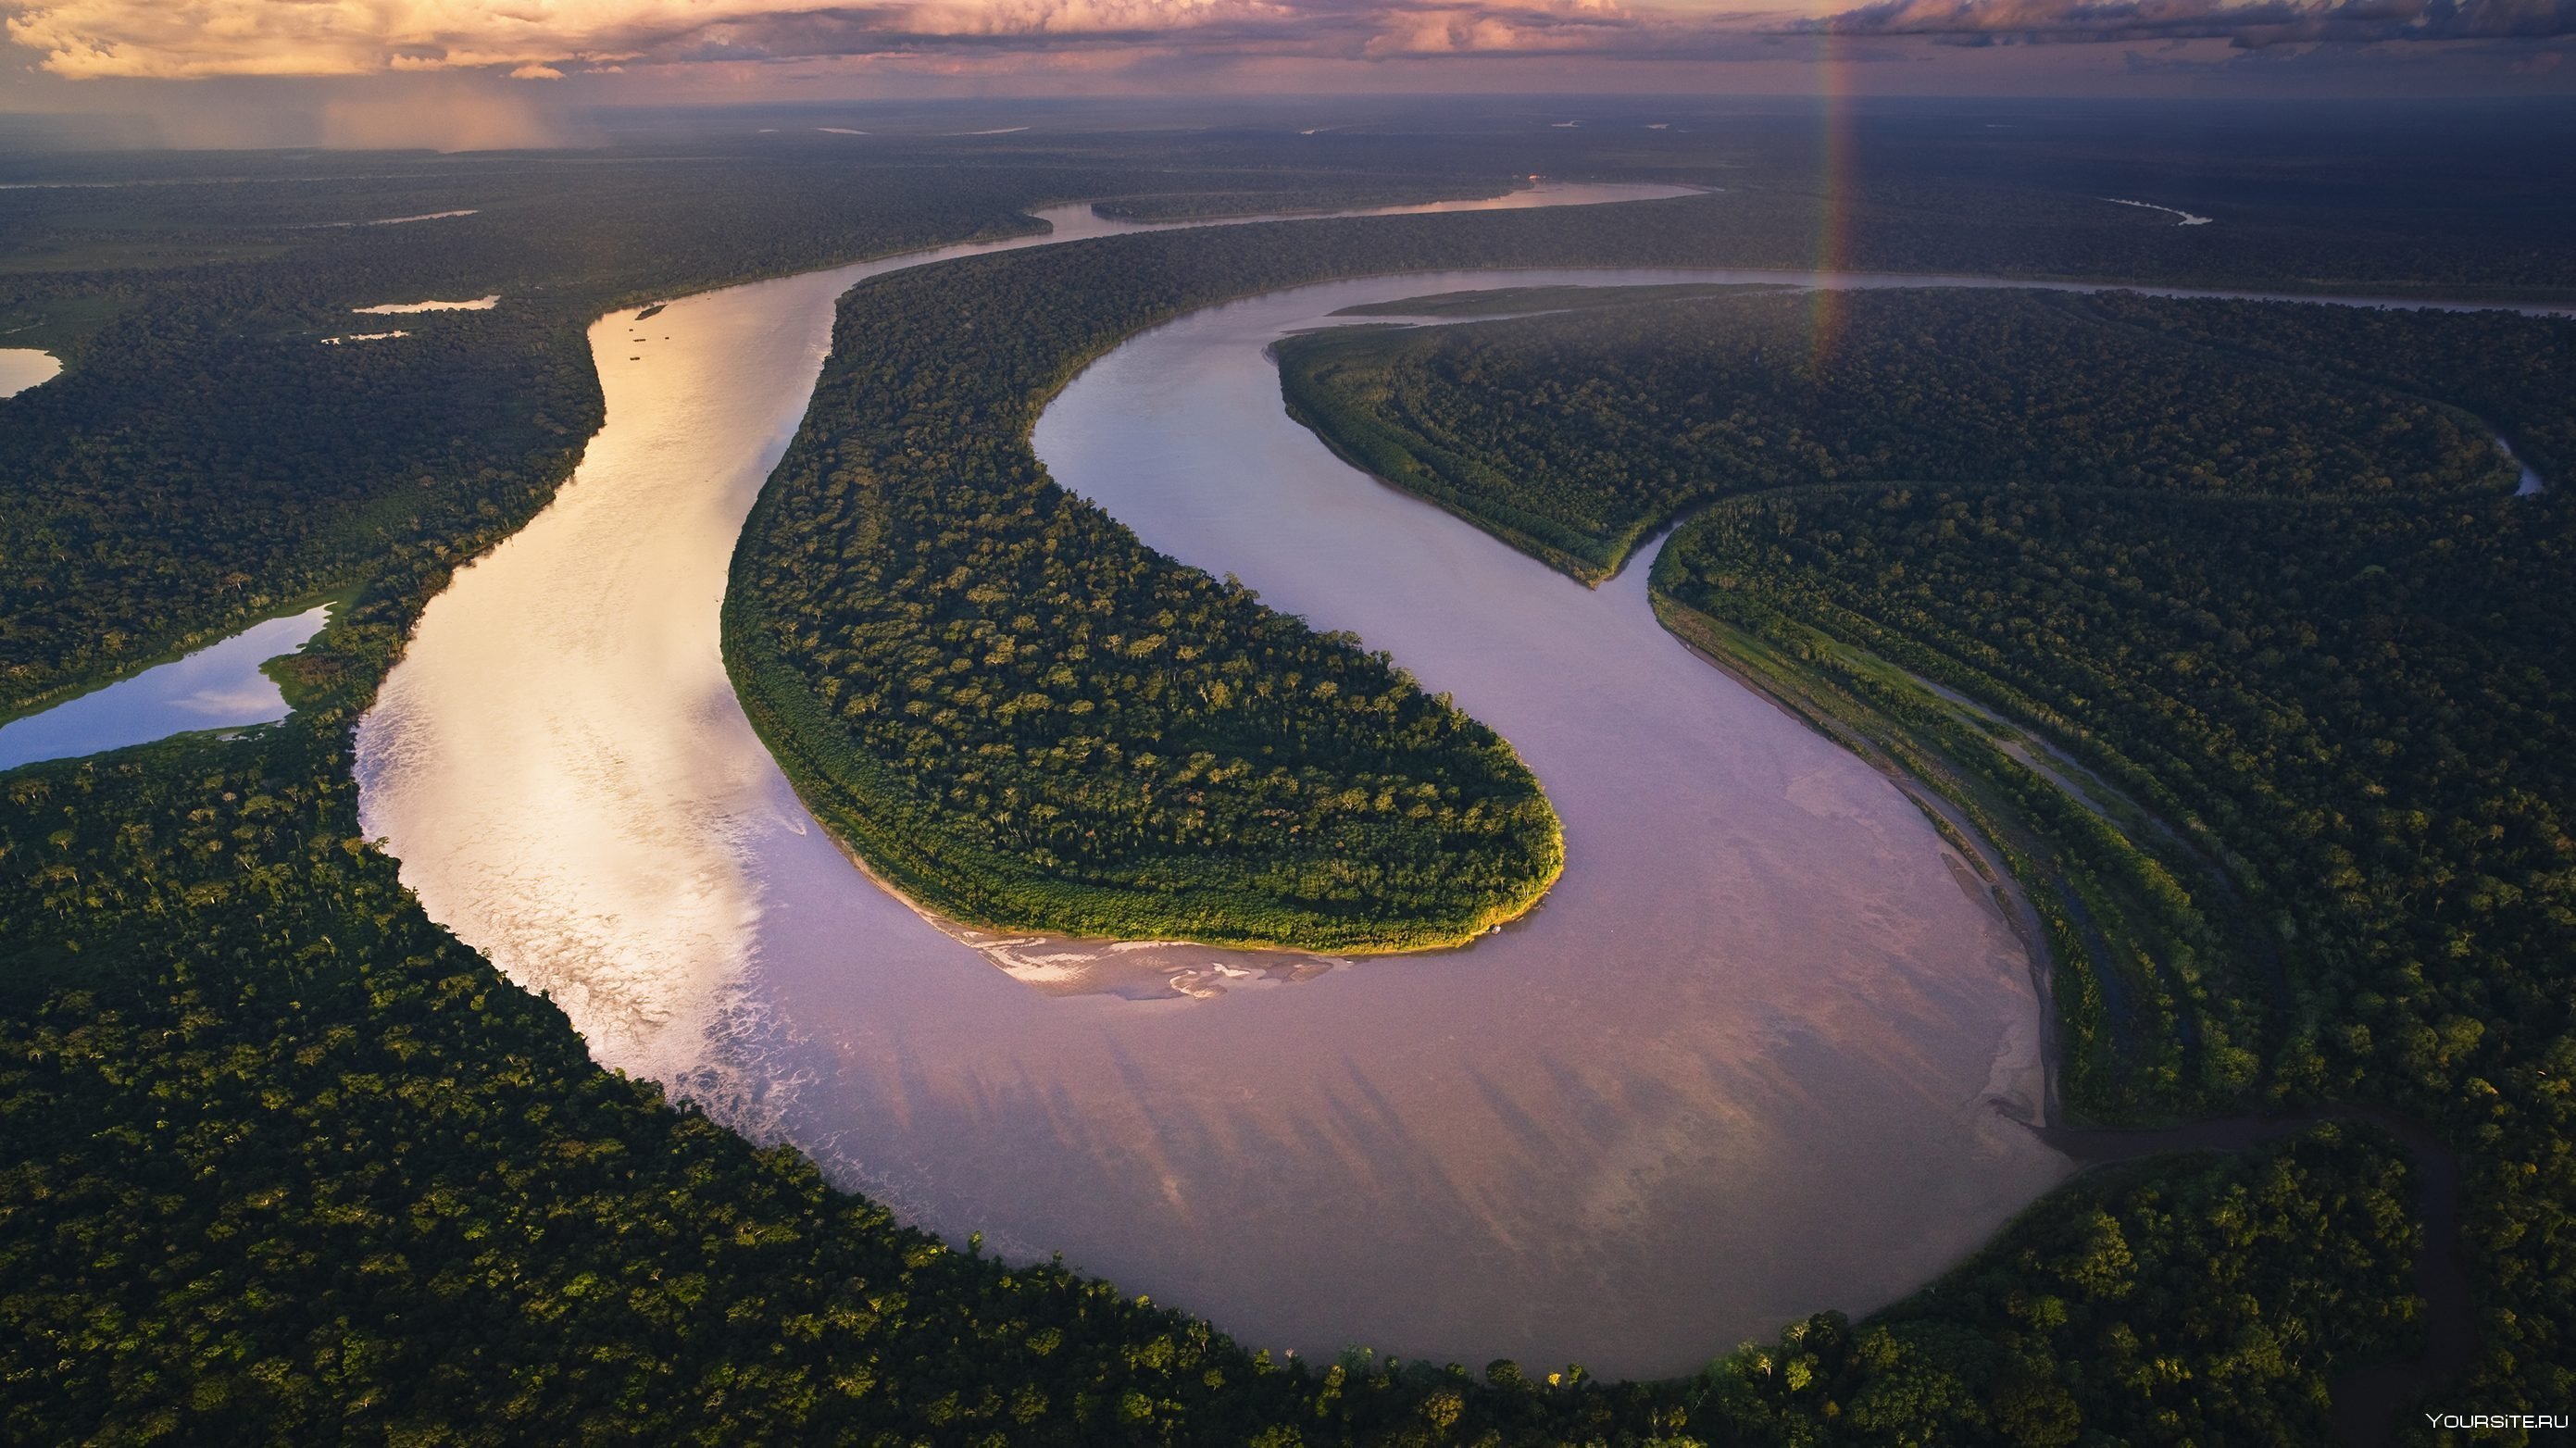 Амазонка полноводна круглый год. Бразилия Амазонская низменность. Амазония река Амазонка. Амазонка река Укаяли. Южная Америка Амазонская низменность.